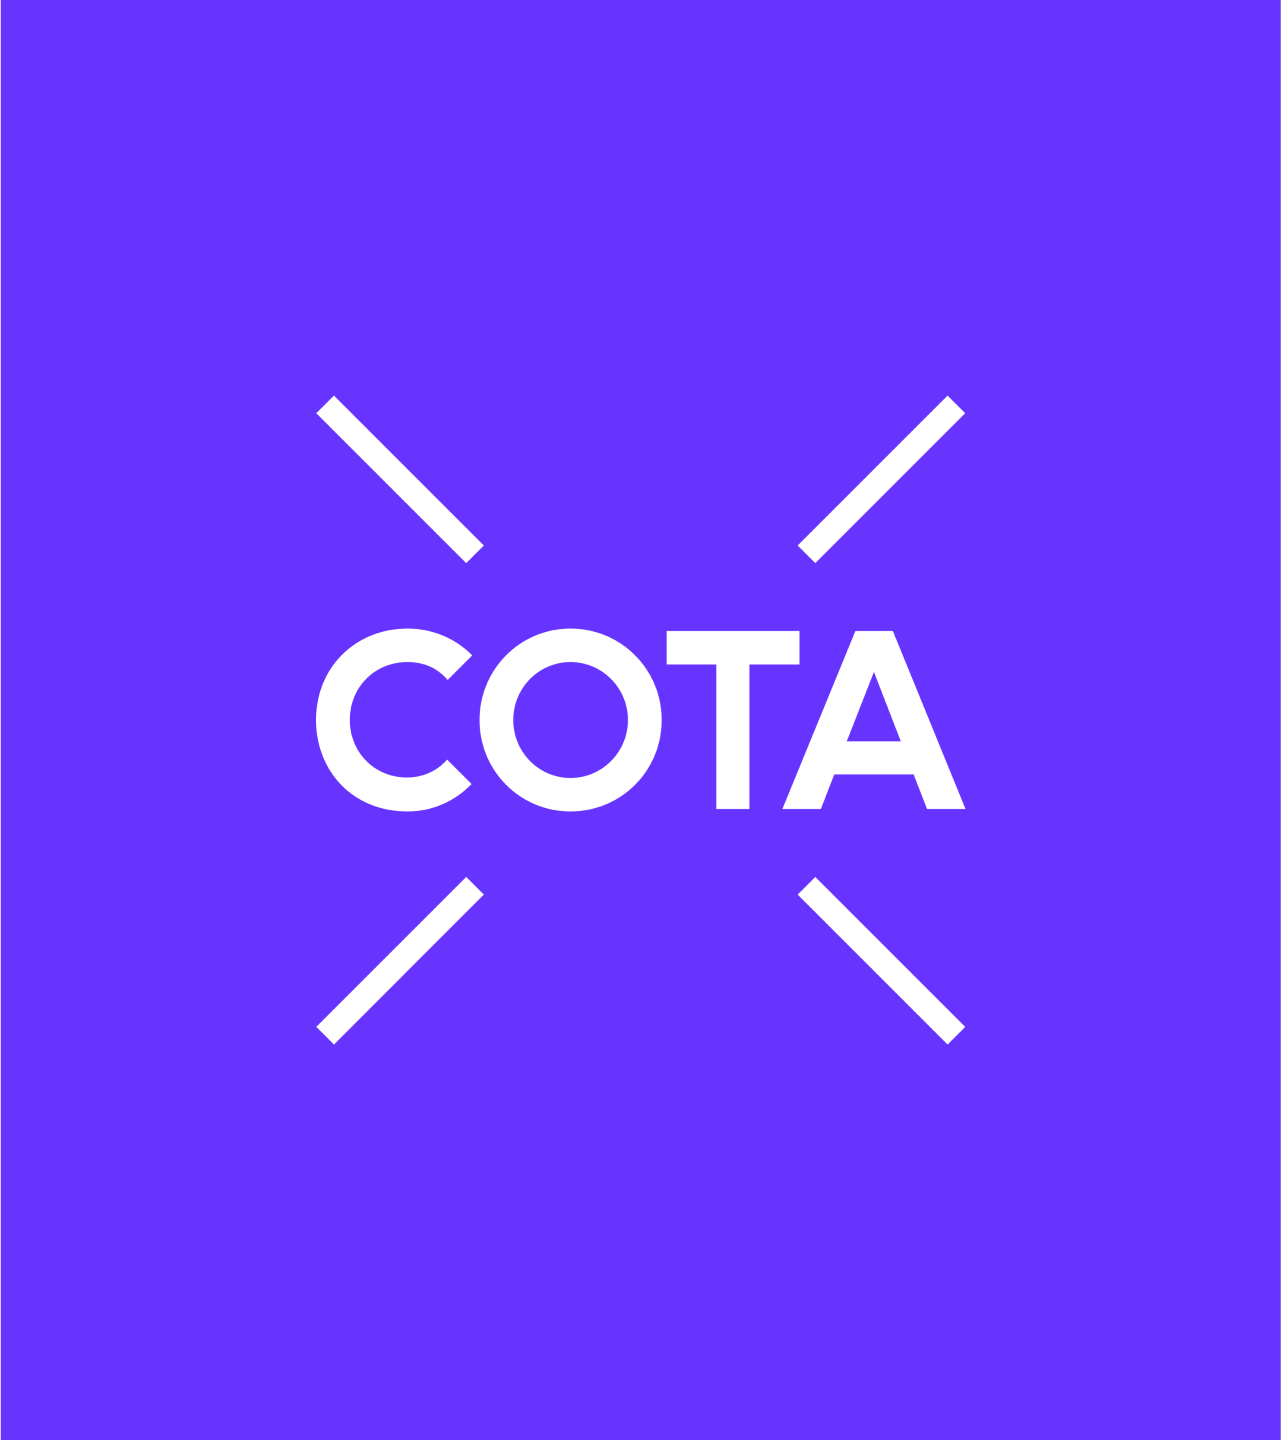 COTA_02a2